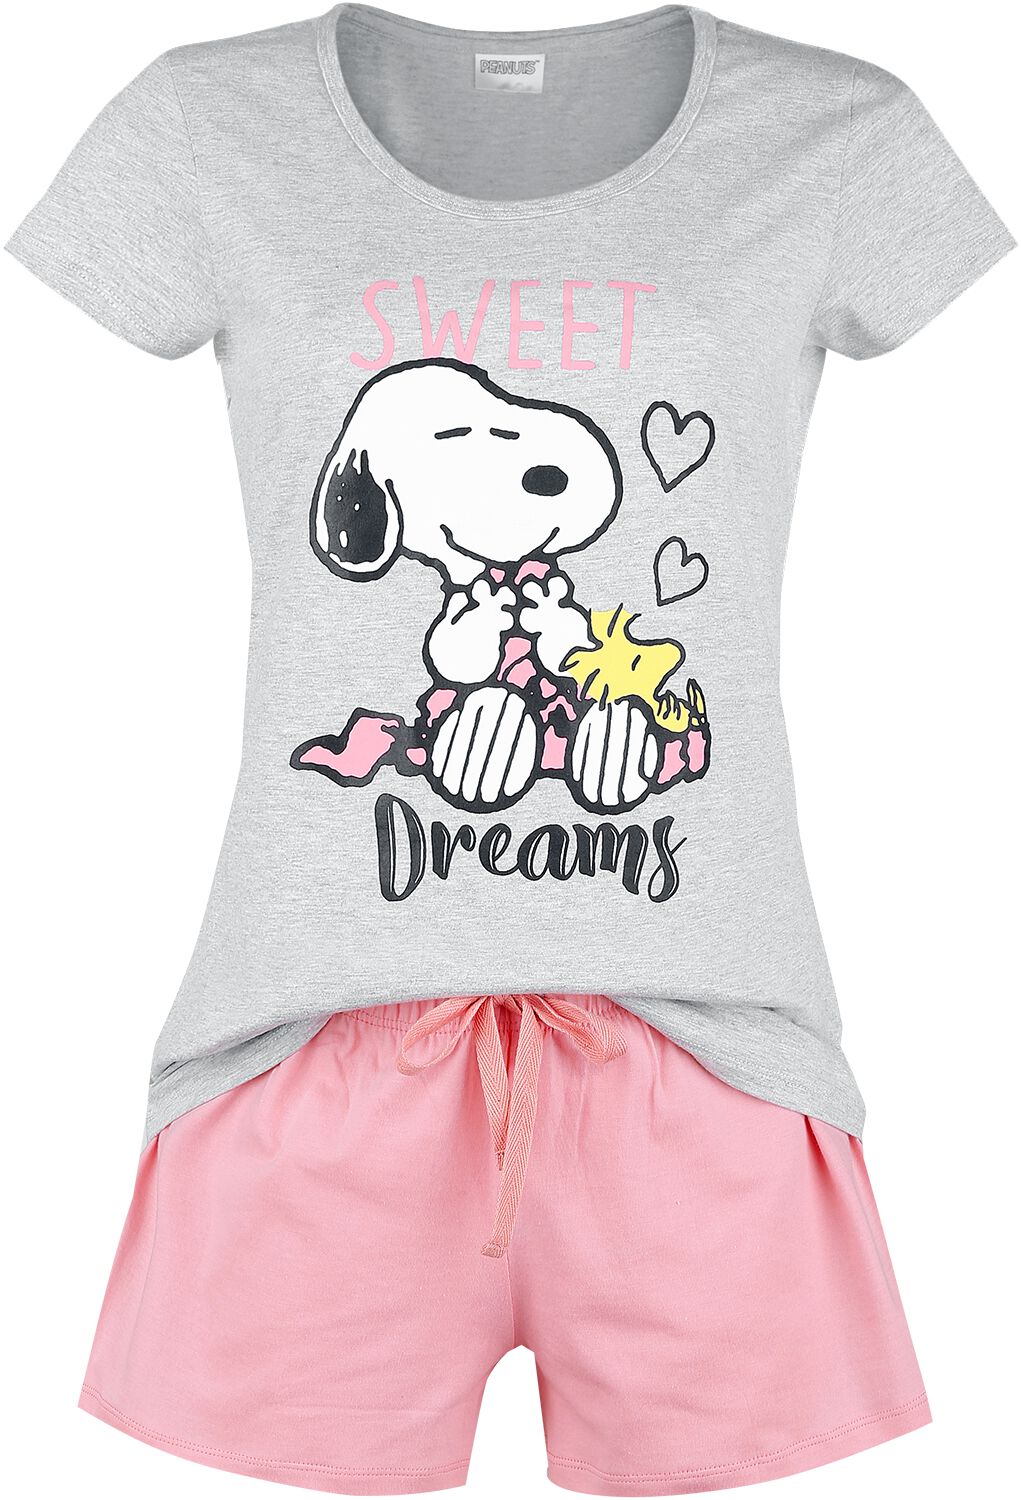 Peanuts Sweet Dreams Pyjama multicolour